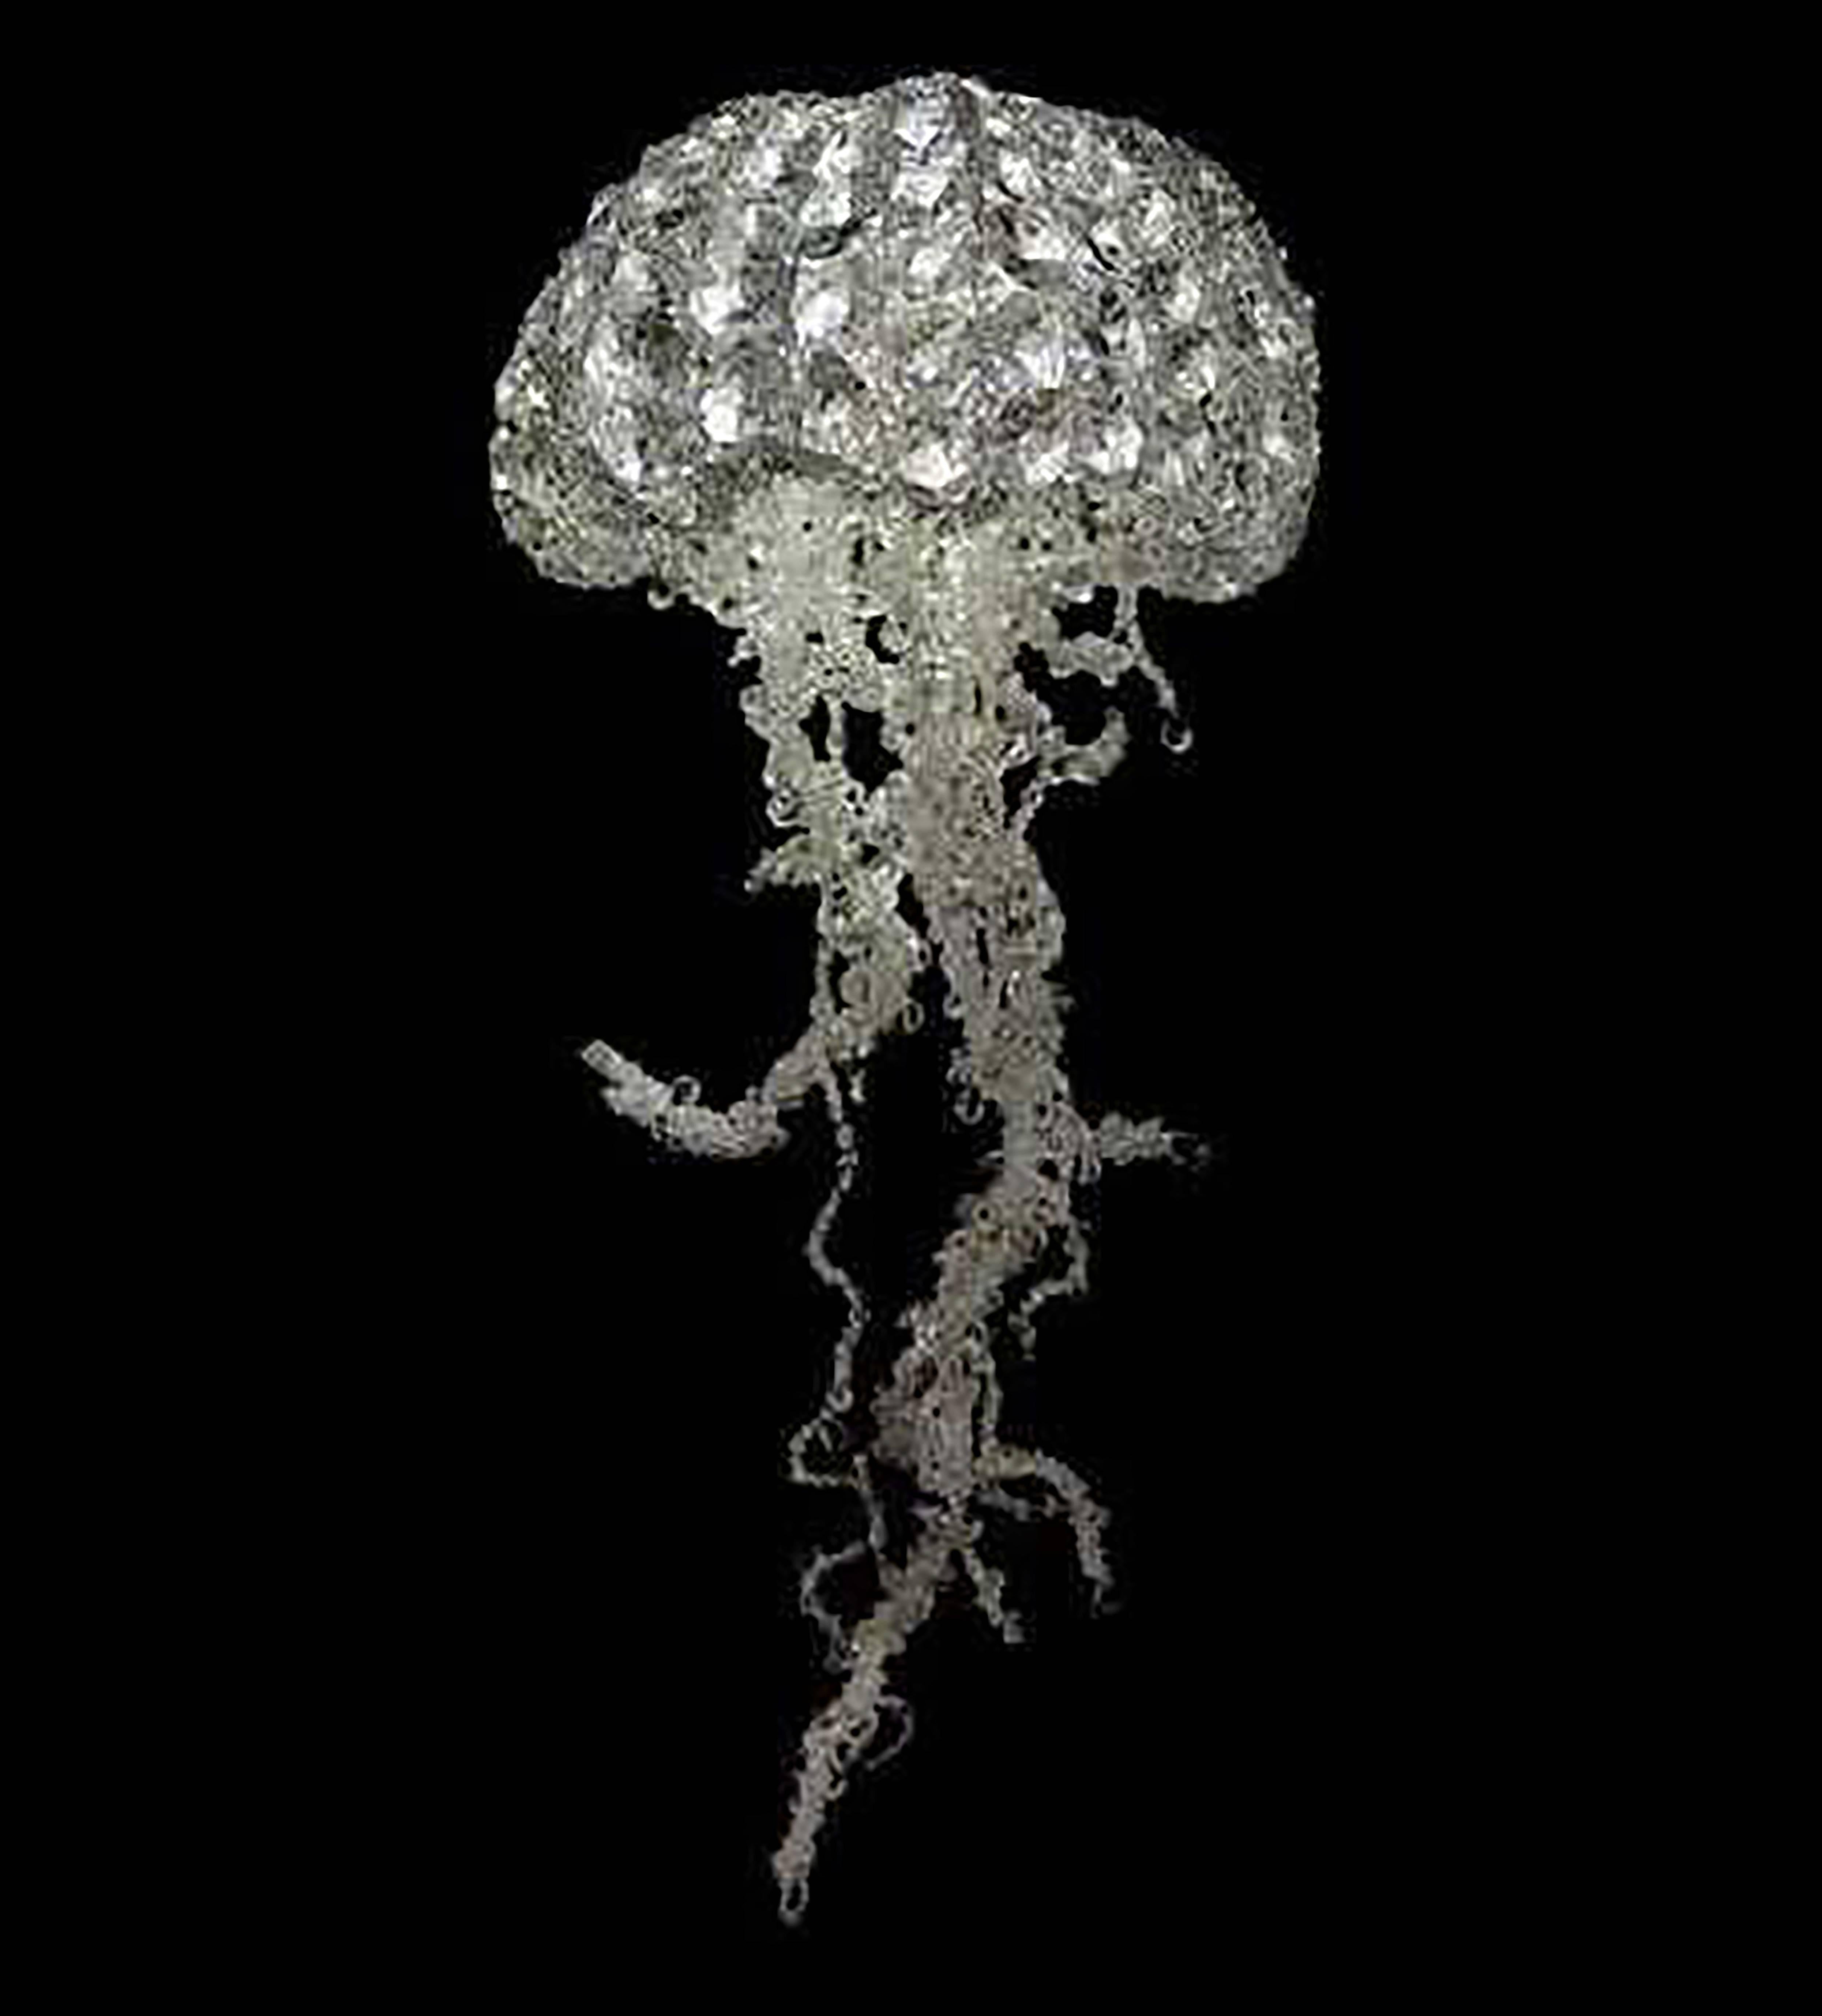 2010, handmade crystal jellyfish chandelier (LED) by Geraldine Gonzalez.
Unique piece.